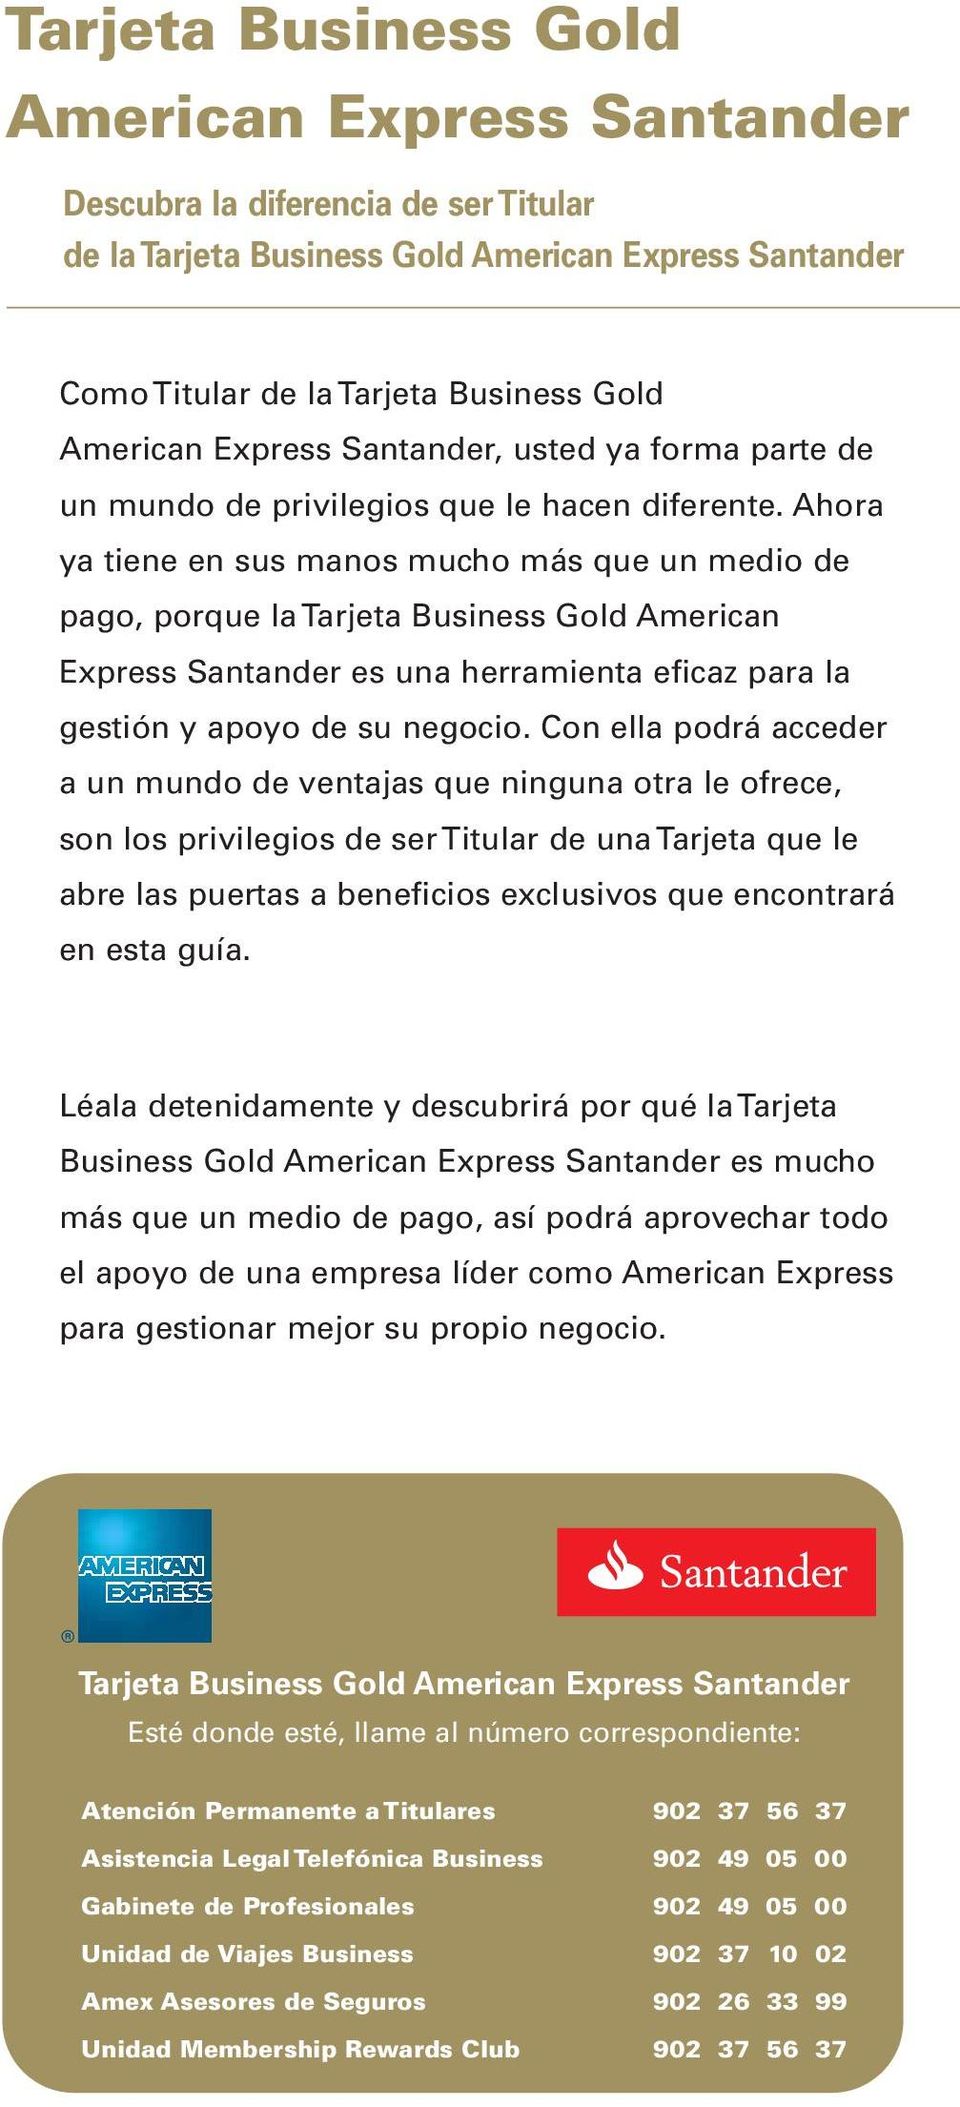 Ahora ya tiene en sus manos mucho más que un medio de pago, porque la Tarjeta Business Gold American Express Santander es una herramienta eficaz para la gestión y apoyo de su negocio.